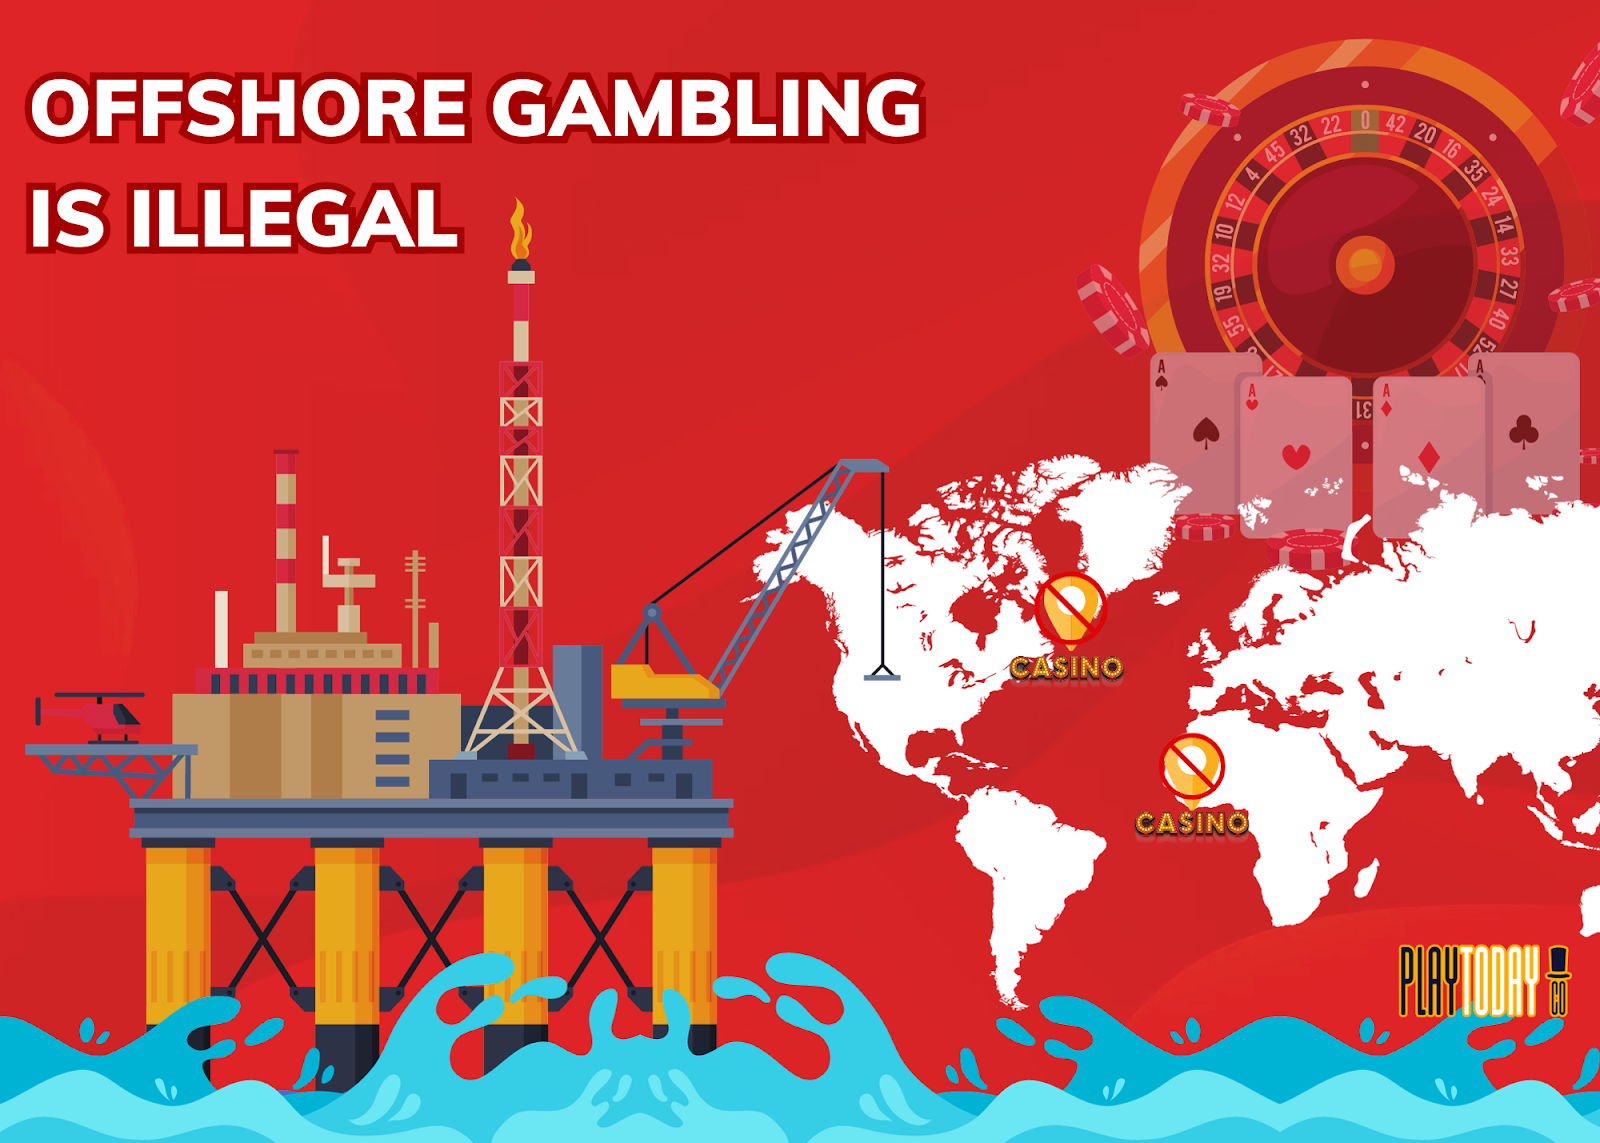 Visual representation of offshore gambling